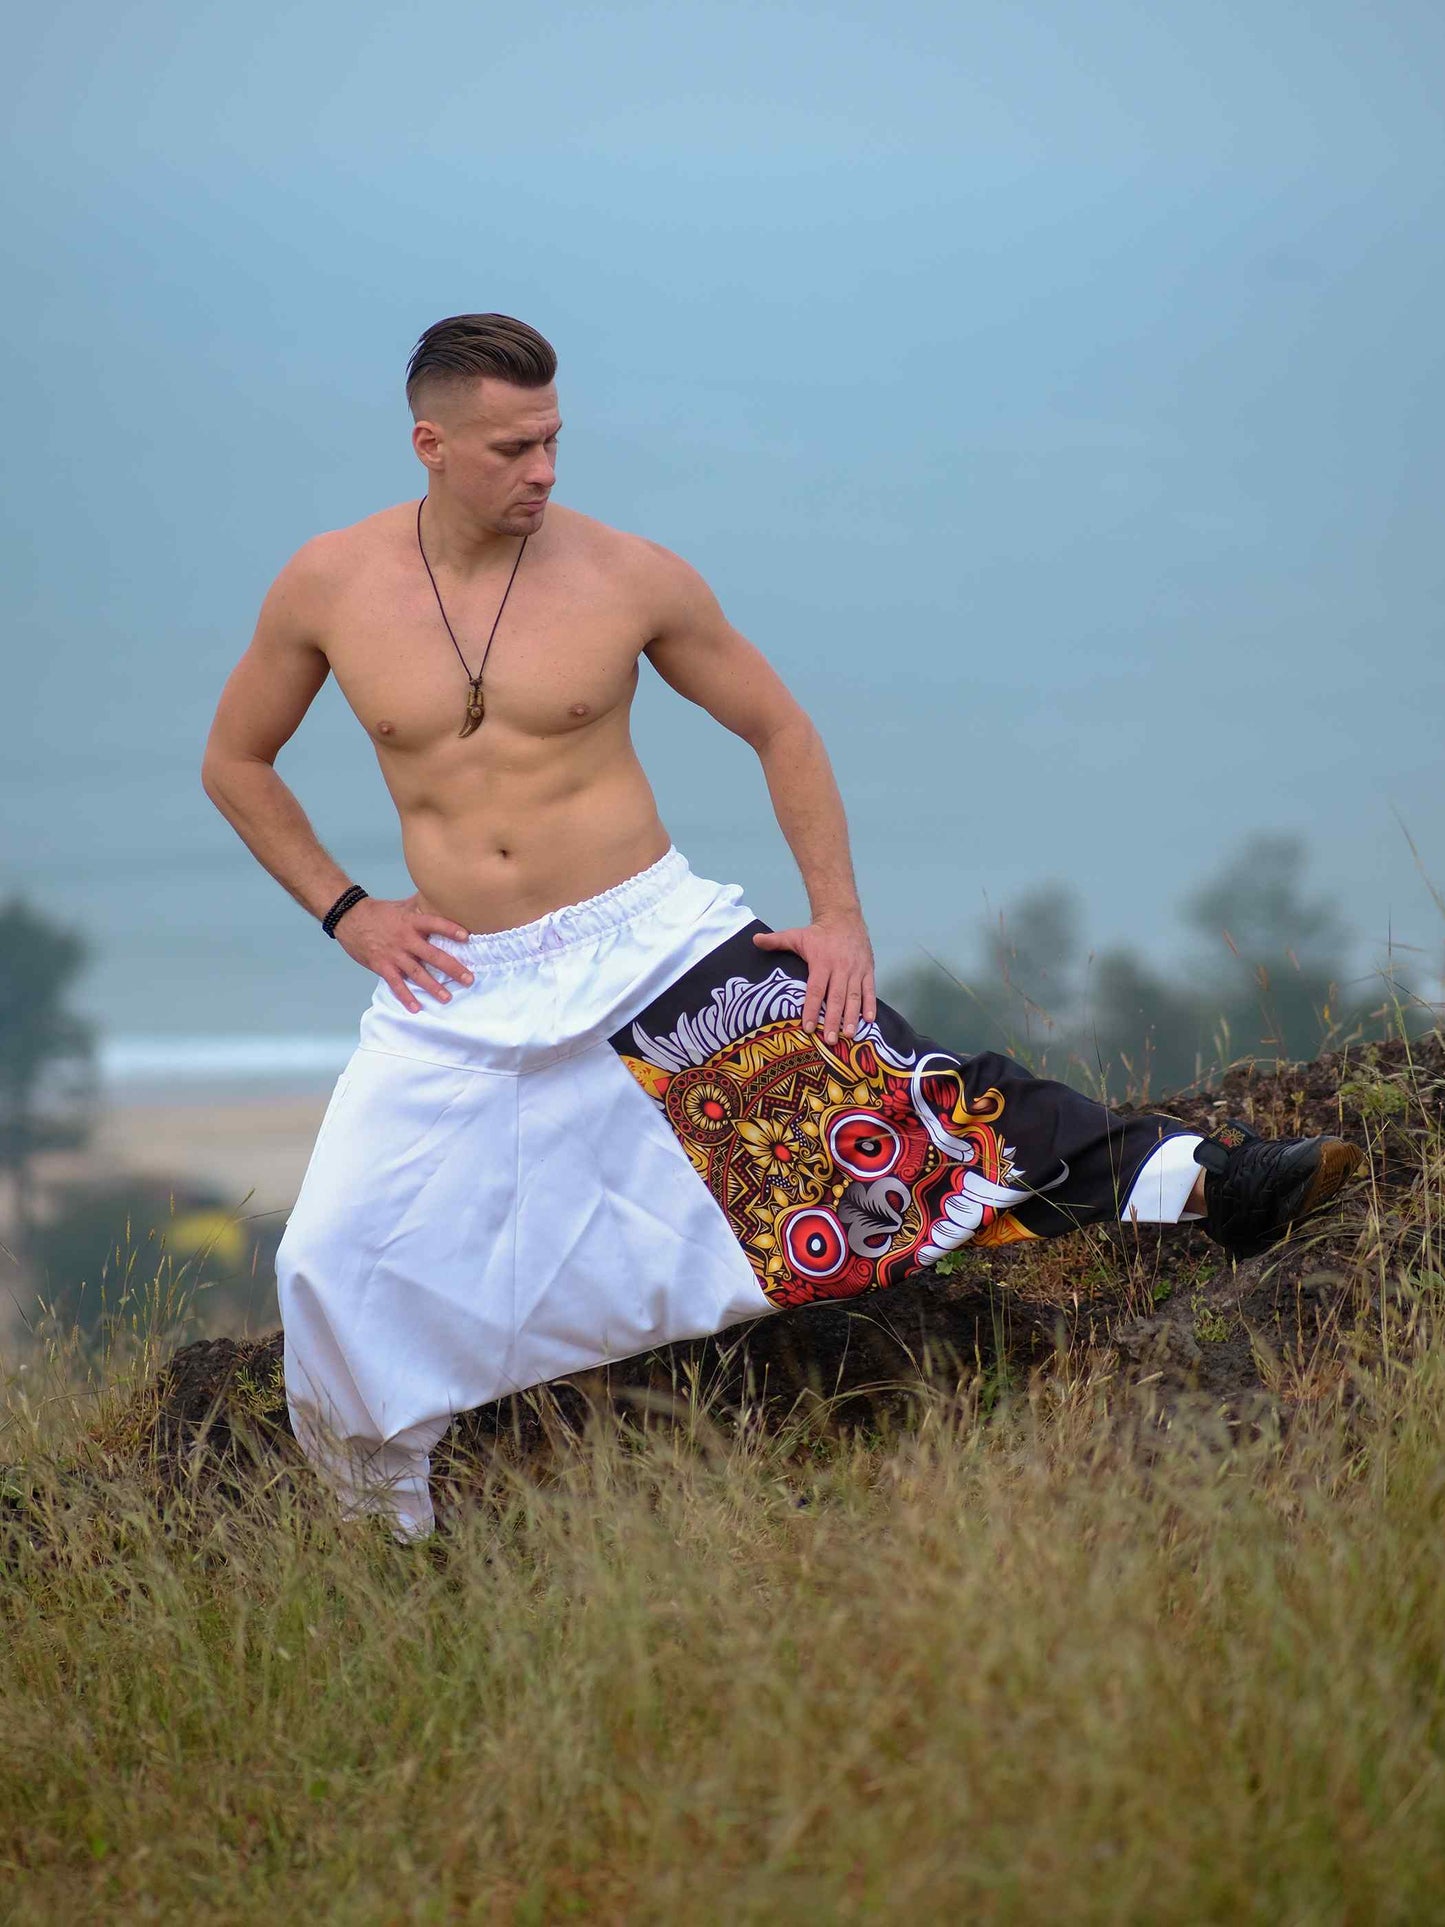 Shop Savage Spirit Travel Genie Pants Bohemian Hippy Harem Pants For Dance Yoga